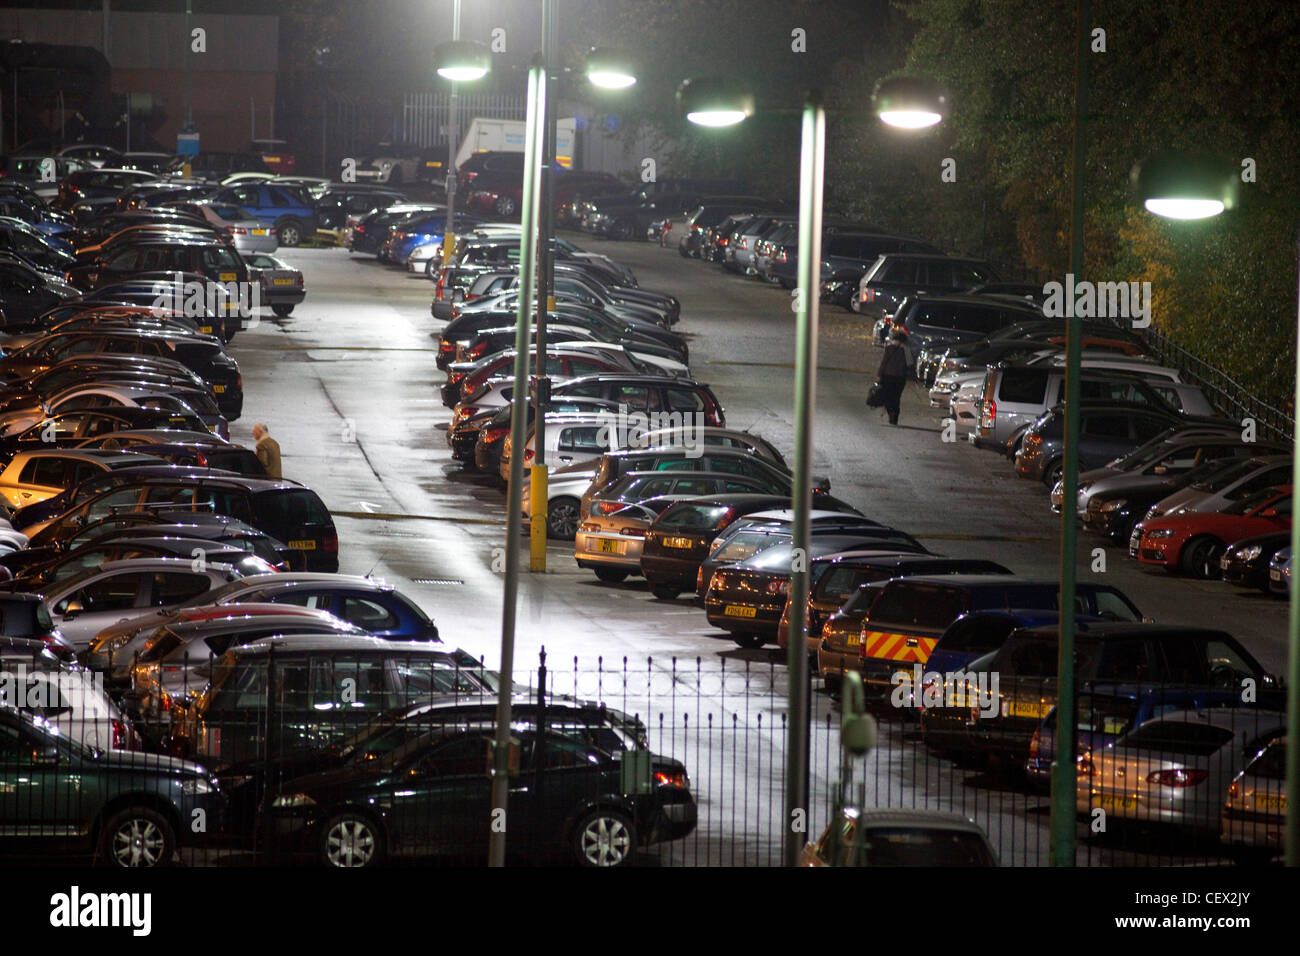 illuminated car park at night Stock Photo